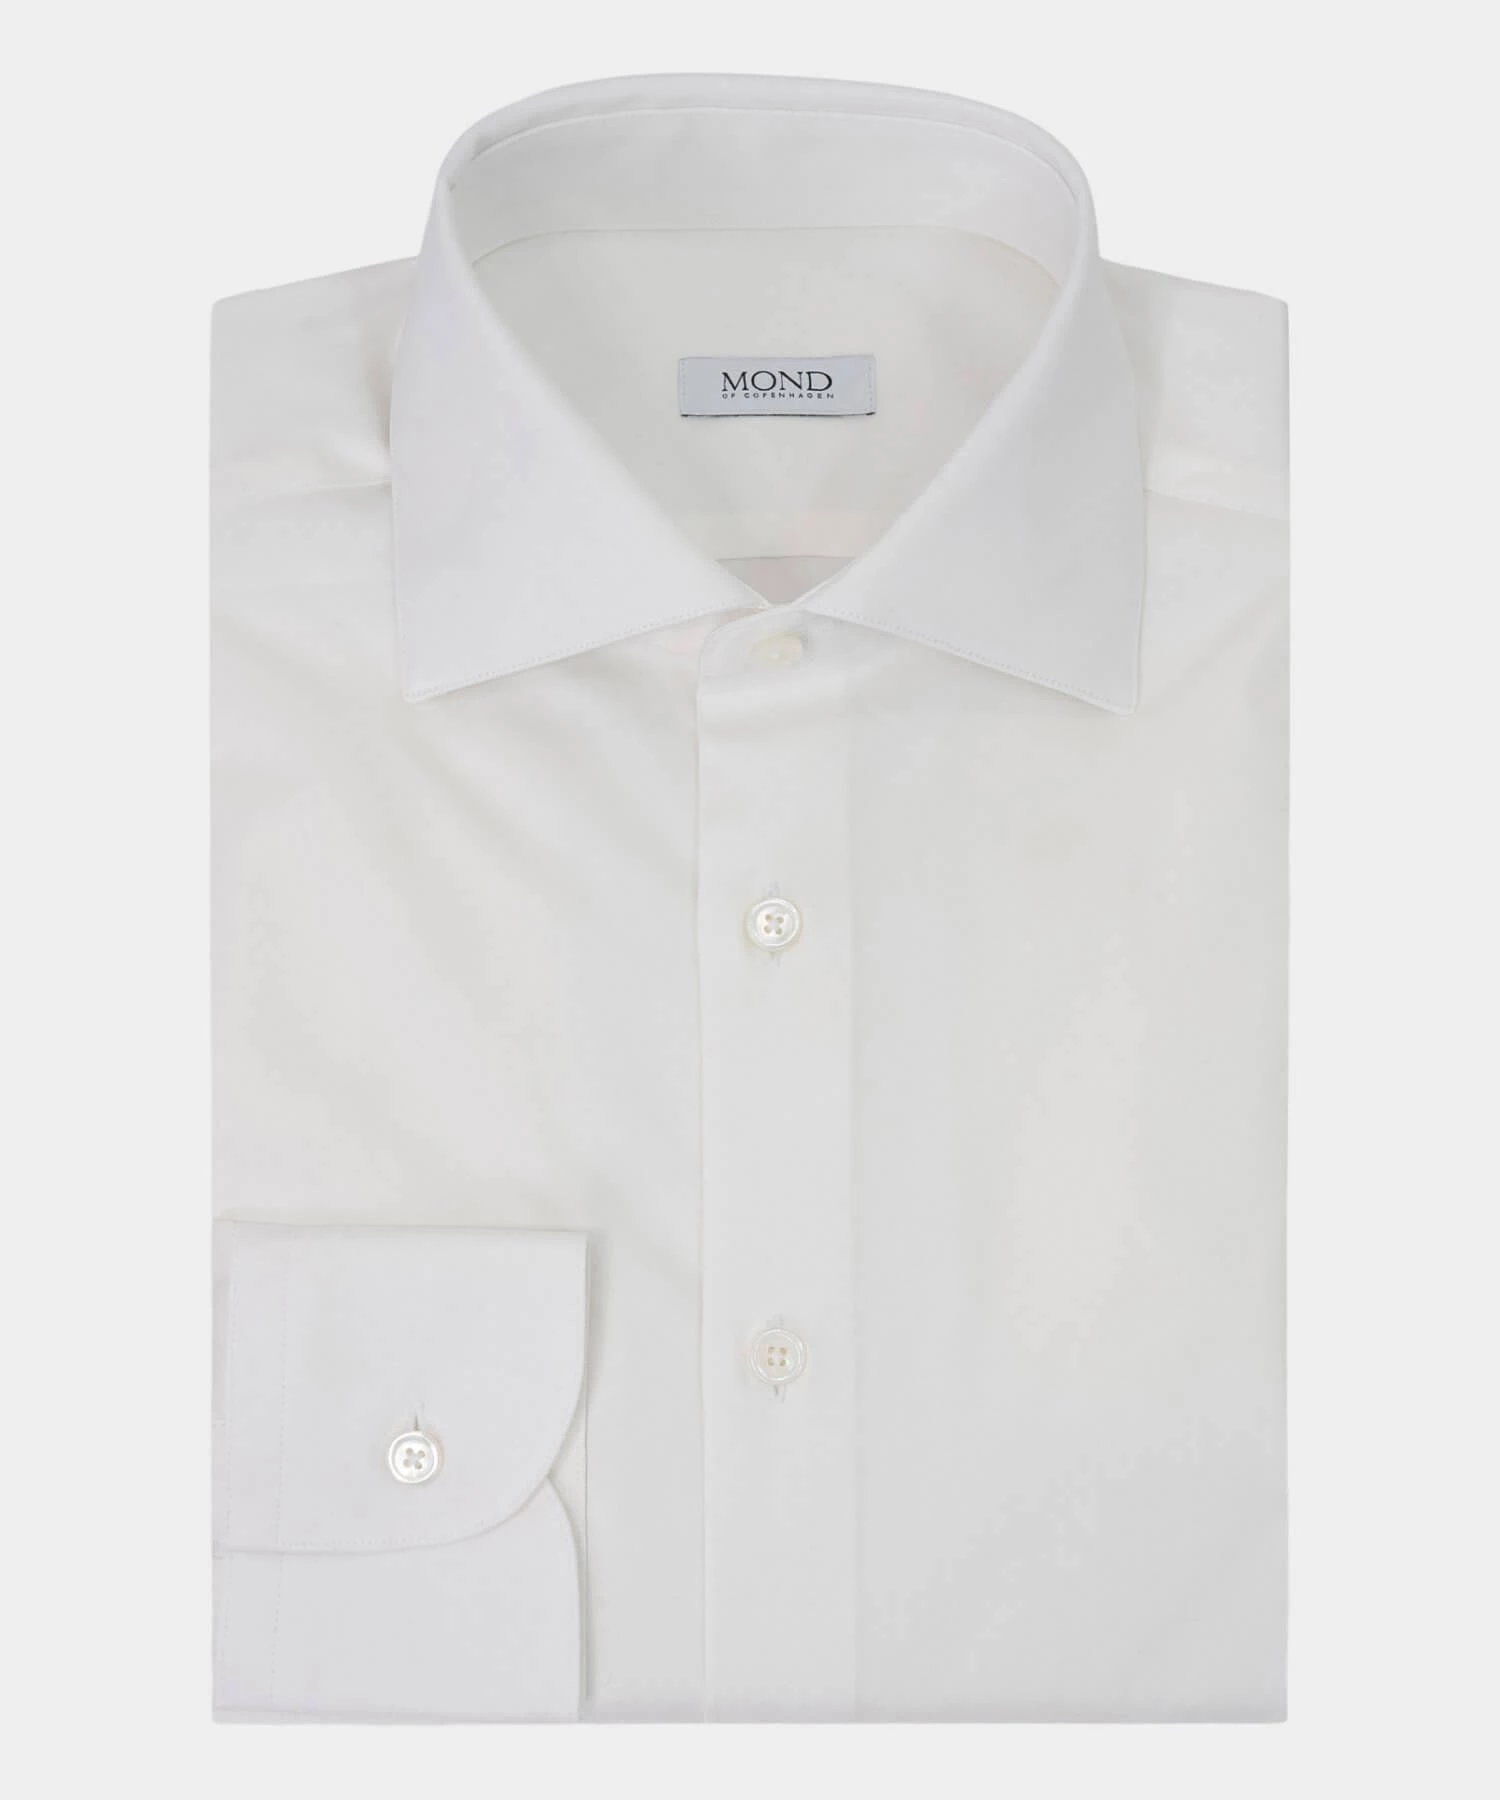 soft off-white denim shirt